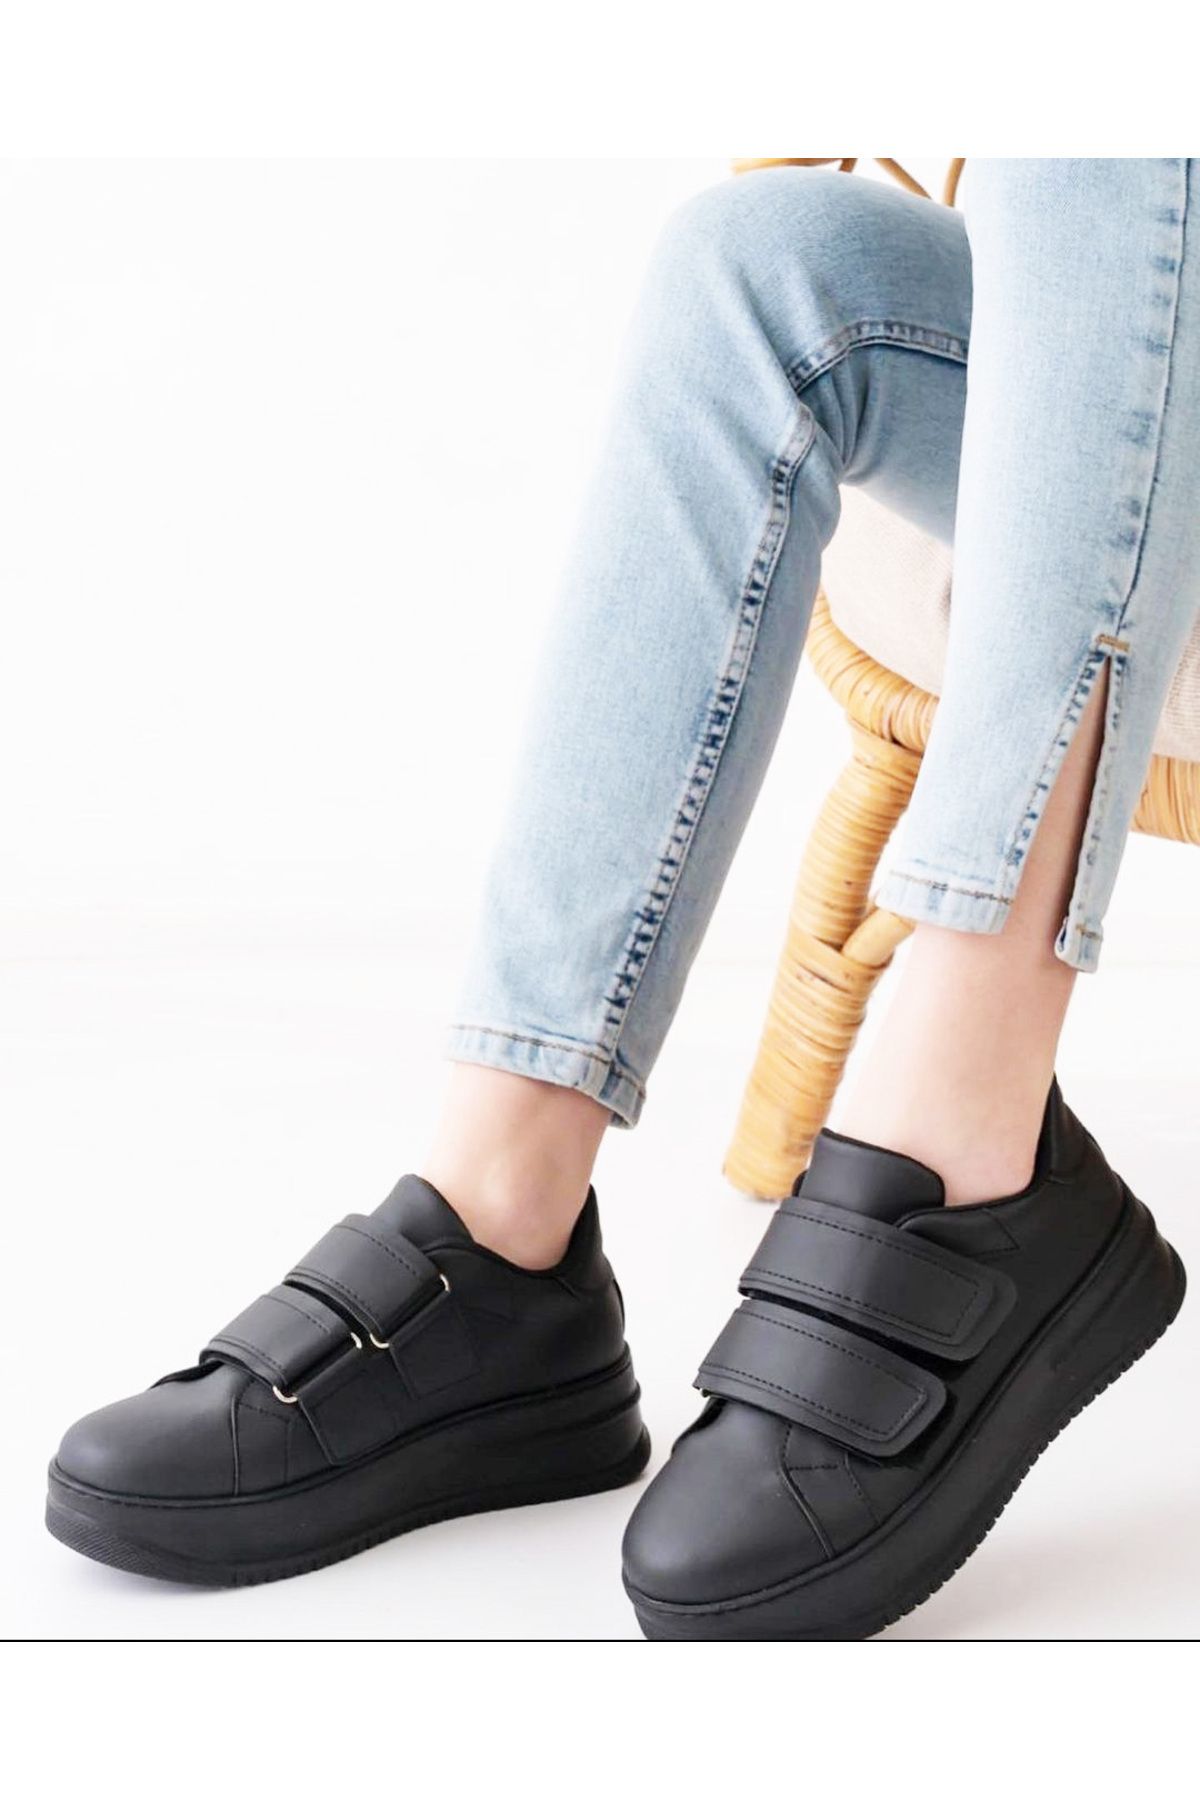 Afilli Kadın Siyah Kalın Platform Dolgu Taban Cırt Cırtlı Sneaker Yürüyüş Günlük Spor Ayakkabı